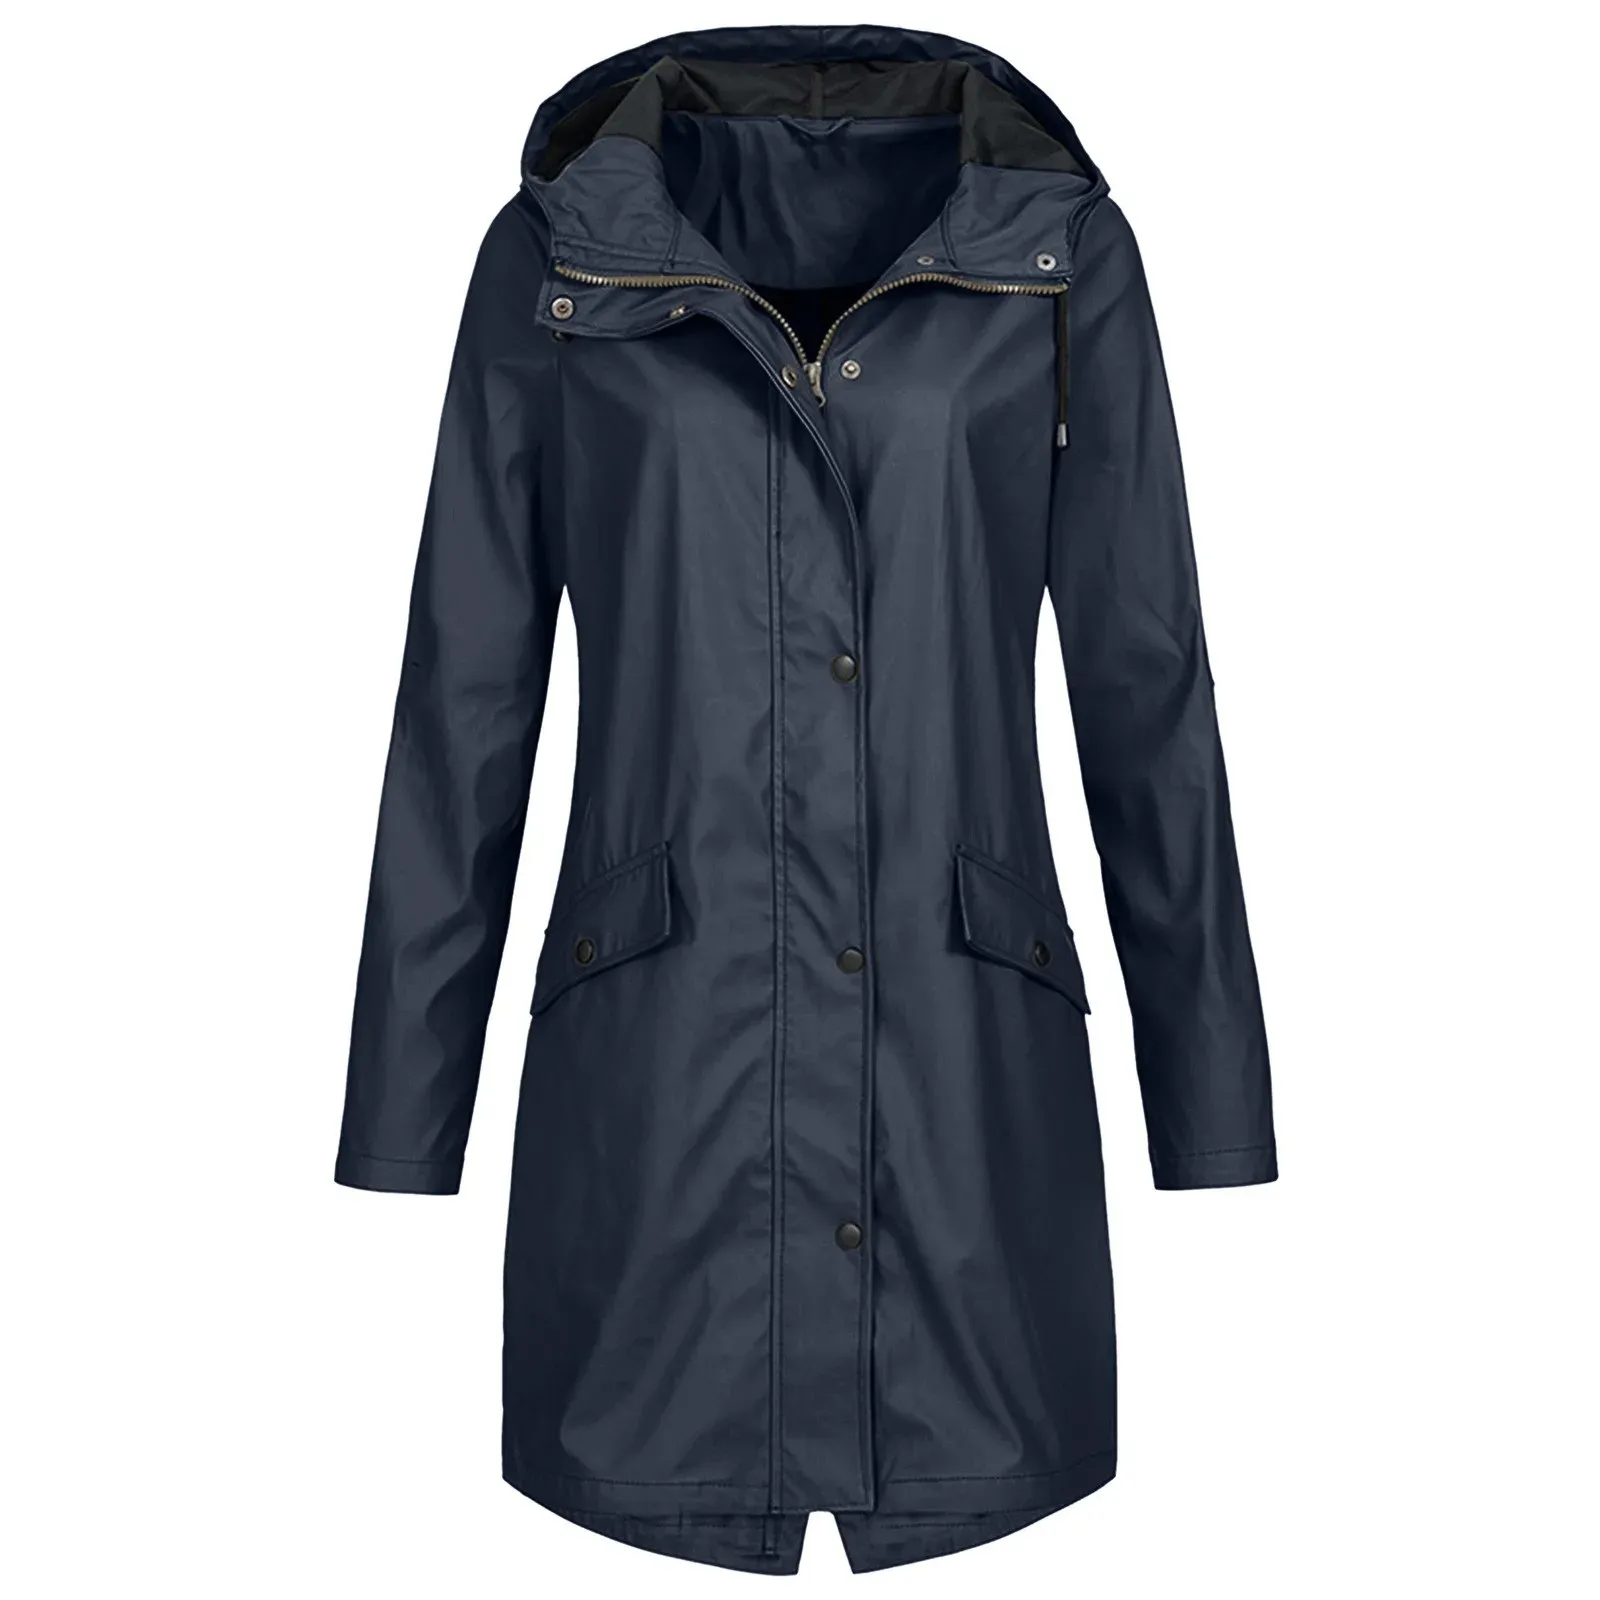 Femme Raincoat Outdoor Softshell Jacket Matel